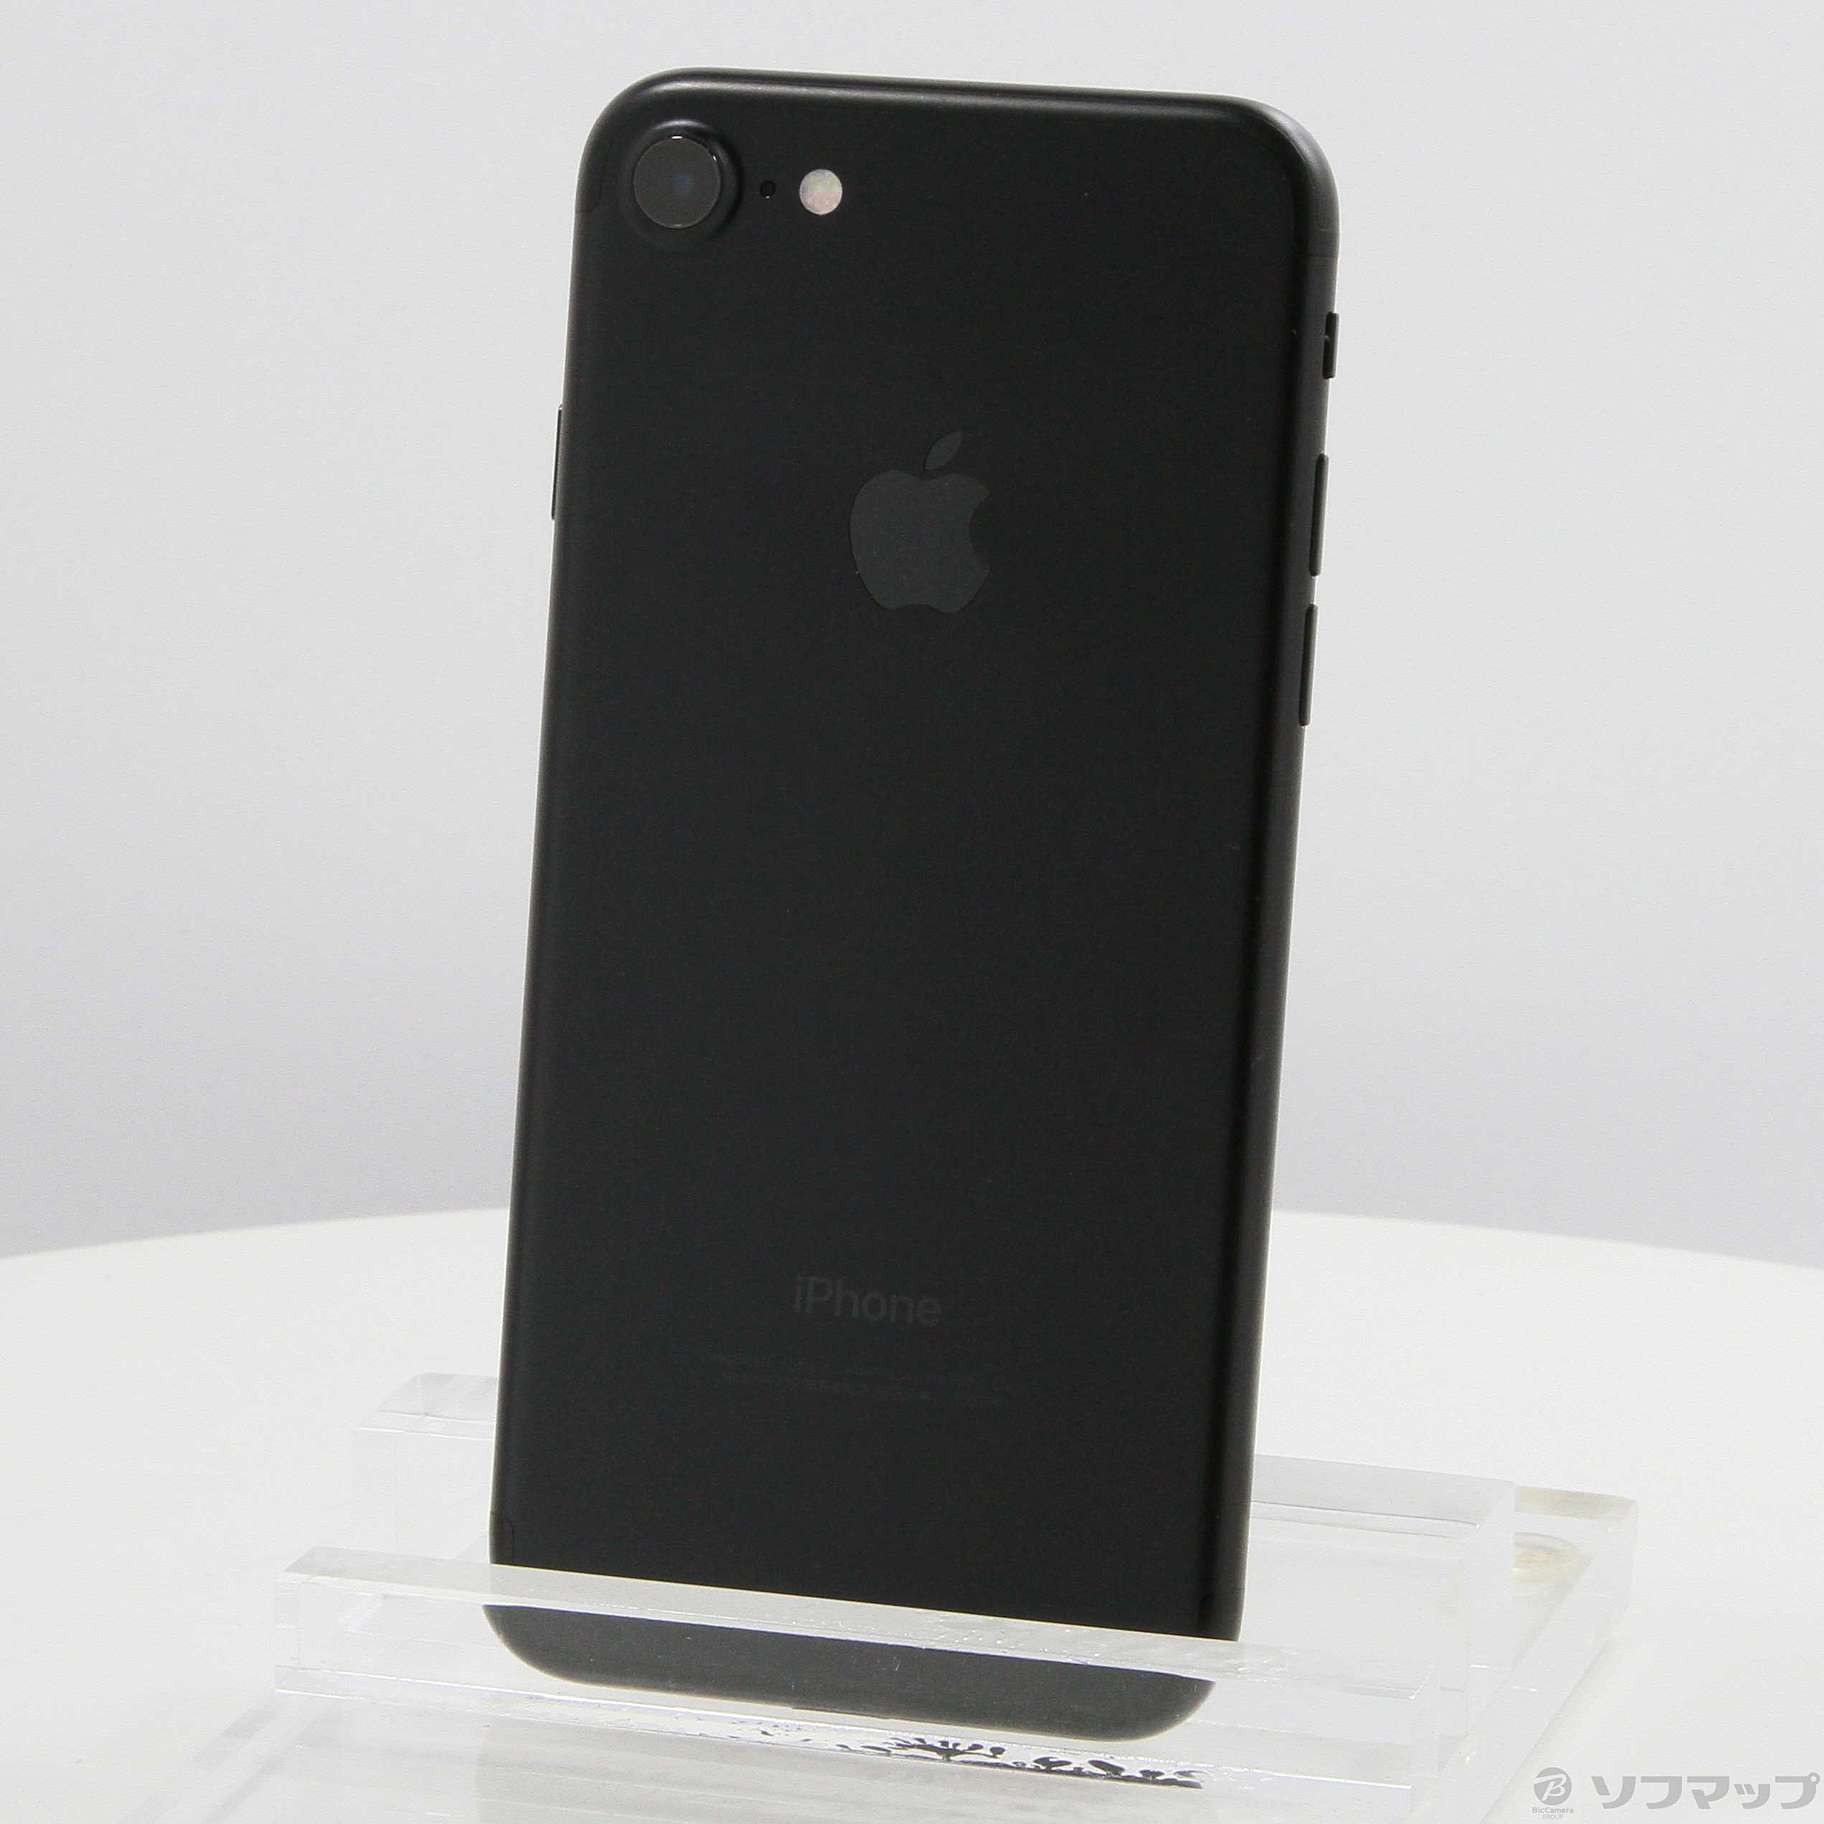 ジャンク】iPhone 7 Black 32GB SoftBank - スマートフォン本体